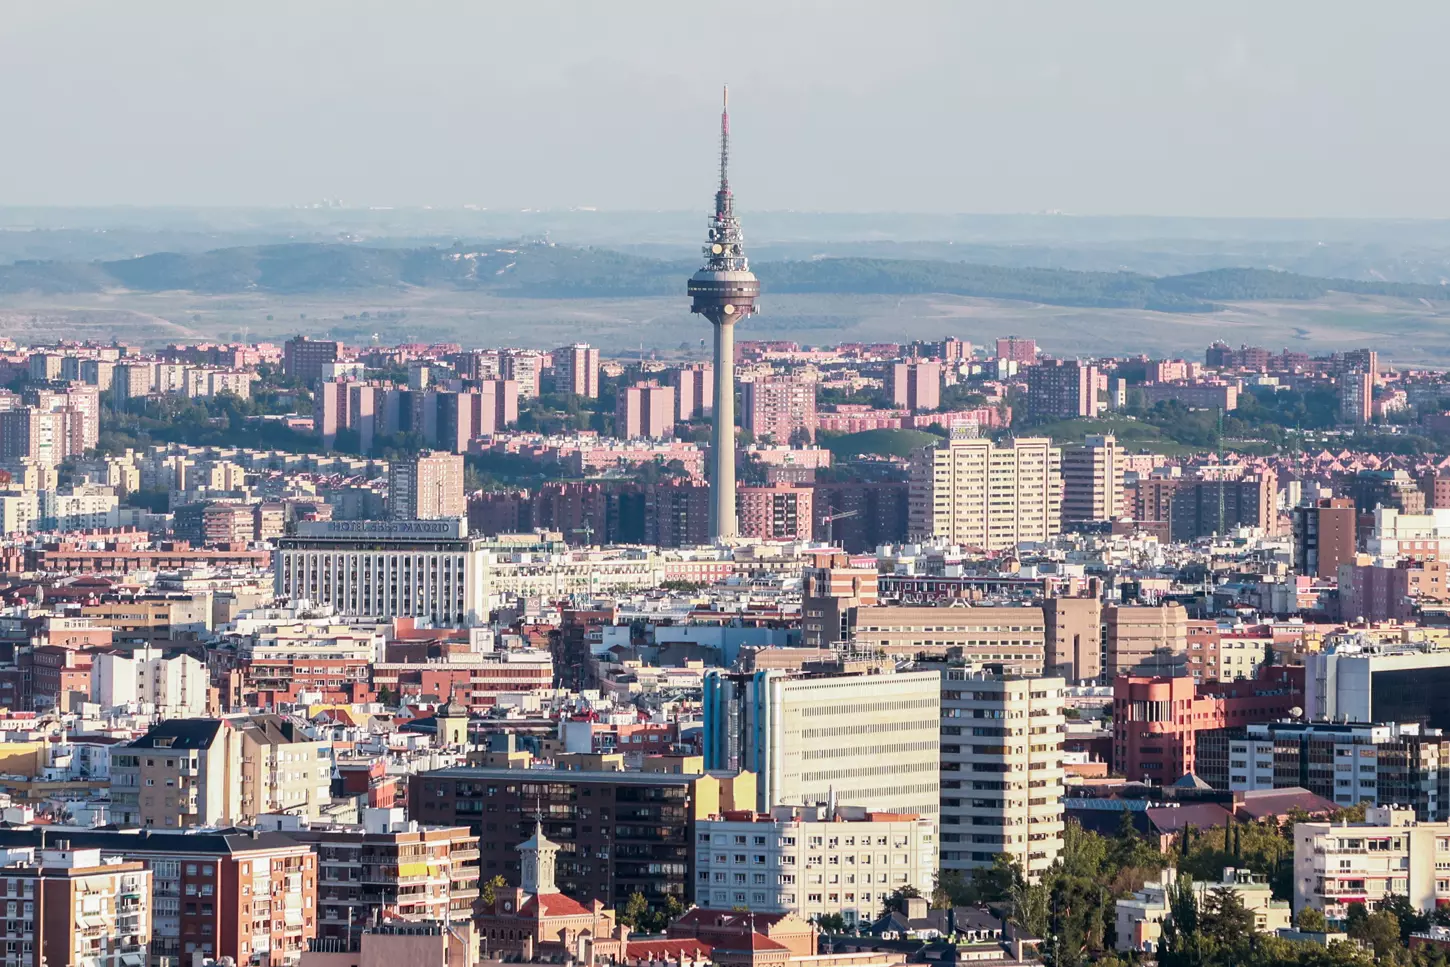 Vista de la ciudad de Madrid, y de la torre de comunicaciones Torrespaña. — Ricardo Rubio / EUROPA PRESS